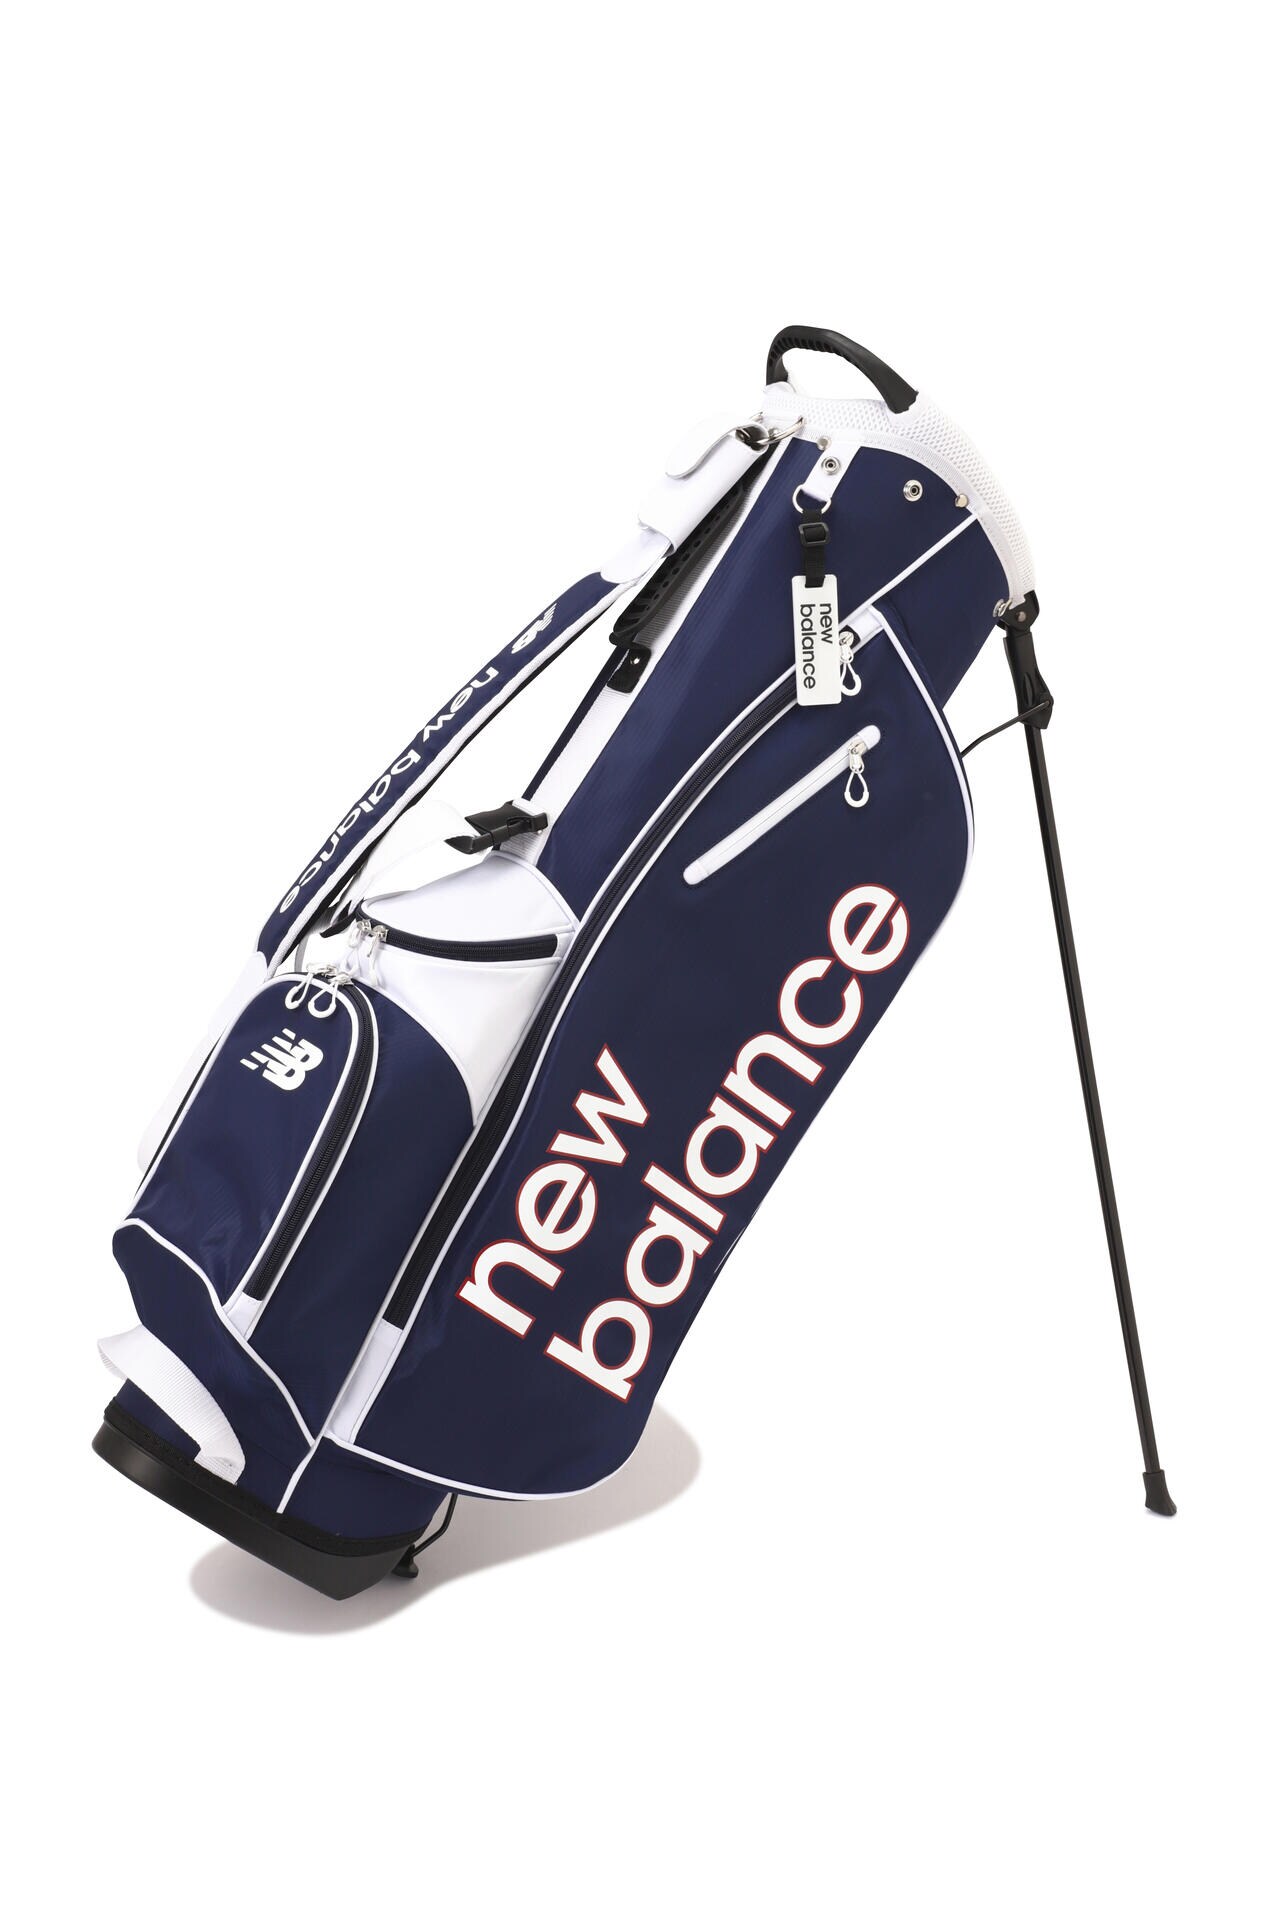 ニューバランス ゴルフ 軽量 キャディバッグ 9.0型 ネイビー - バッグ